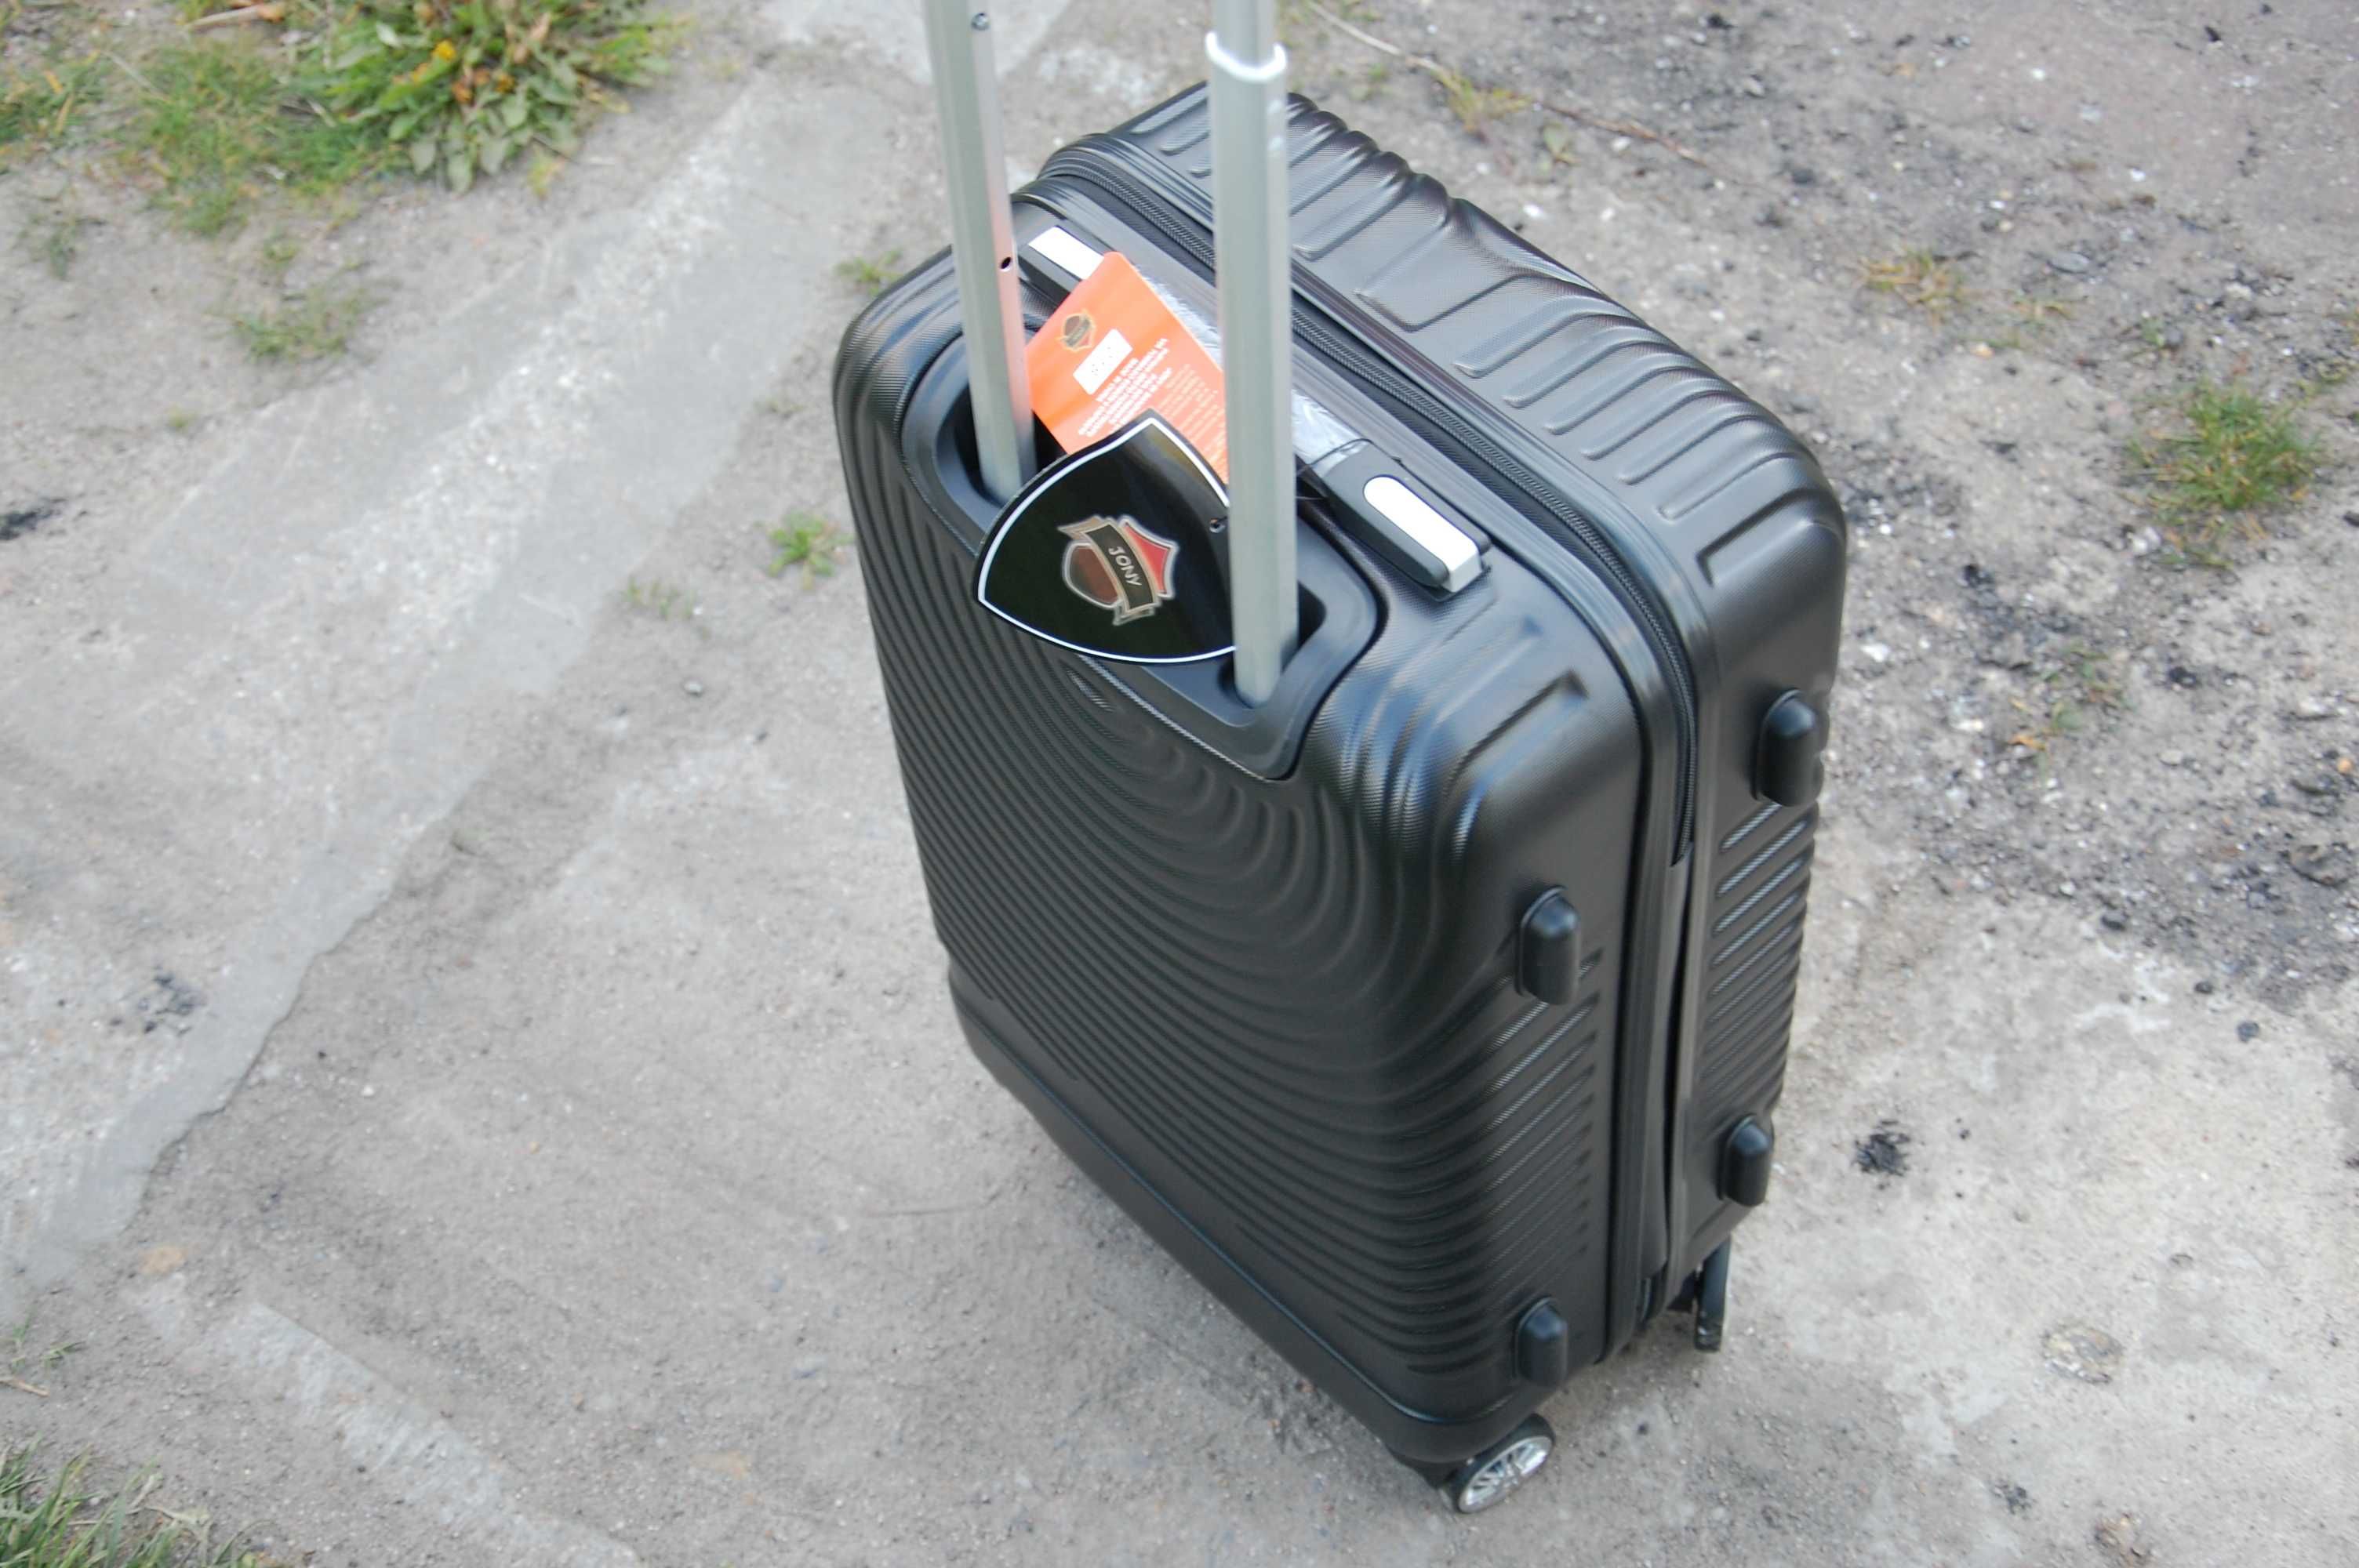 nowa mala walizka podrozna ABS na 4 kolkach obracanych 360 stopni